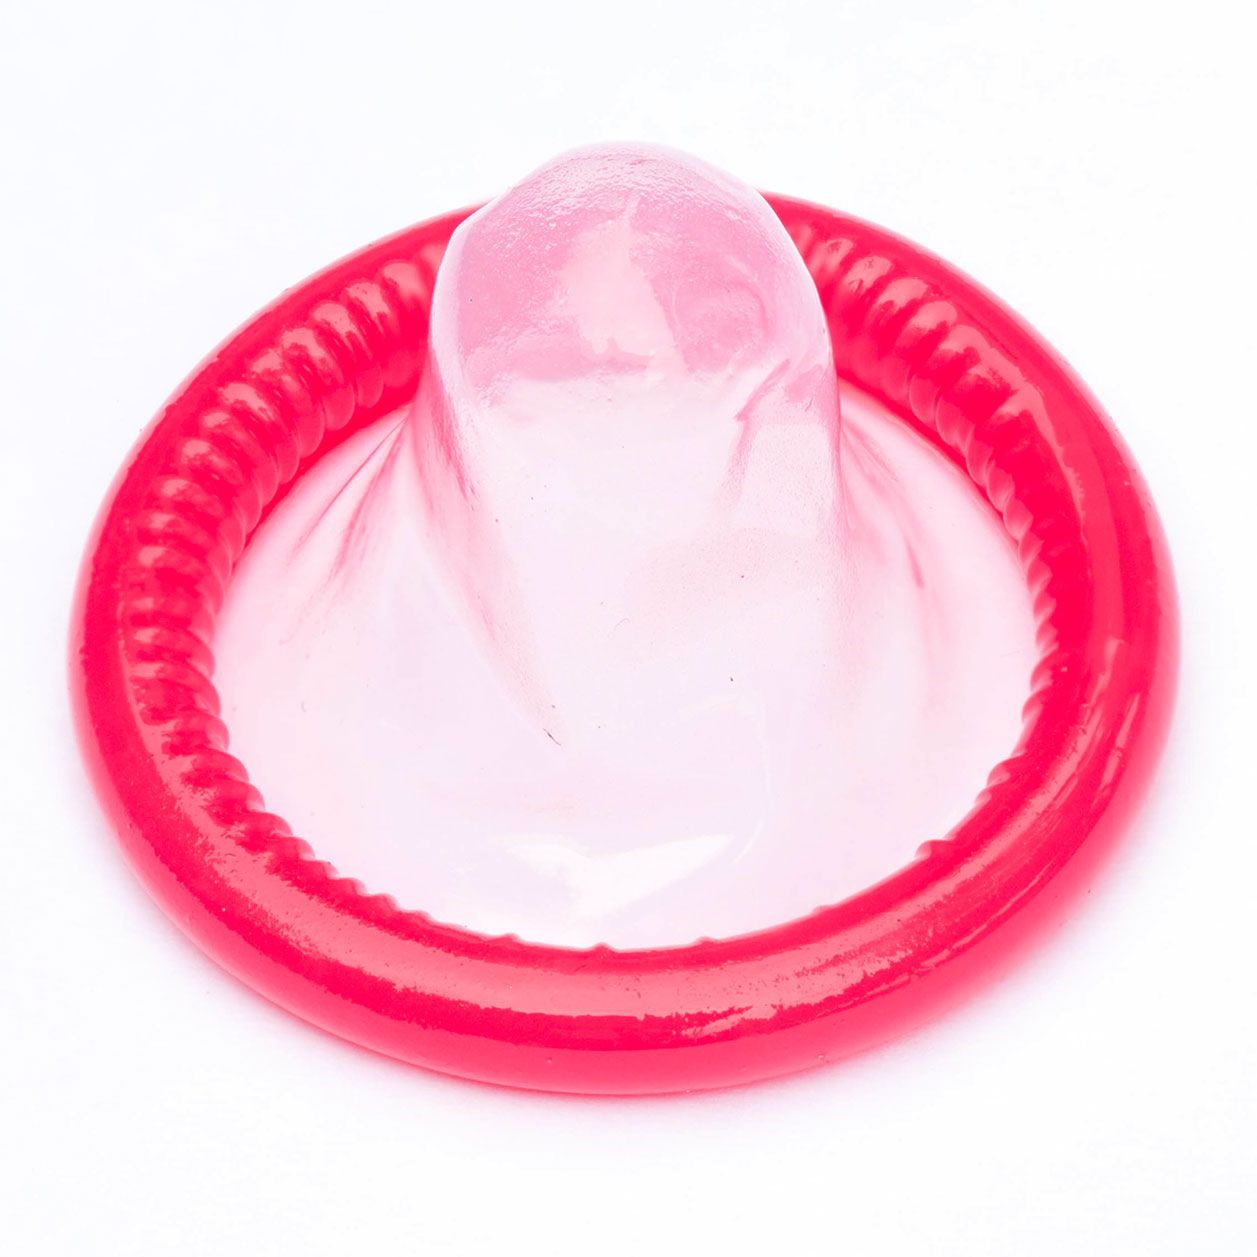 Kondom richtig herum überziehen